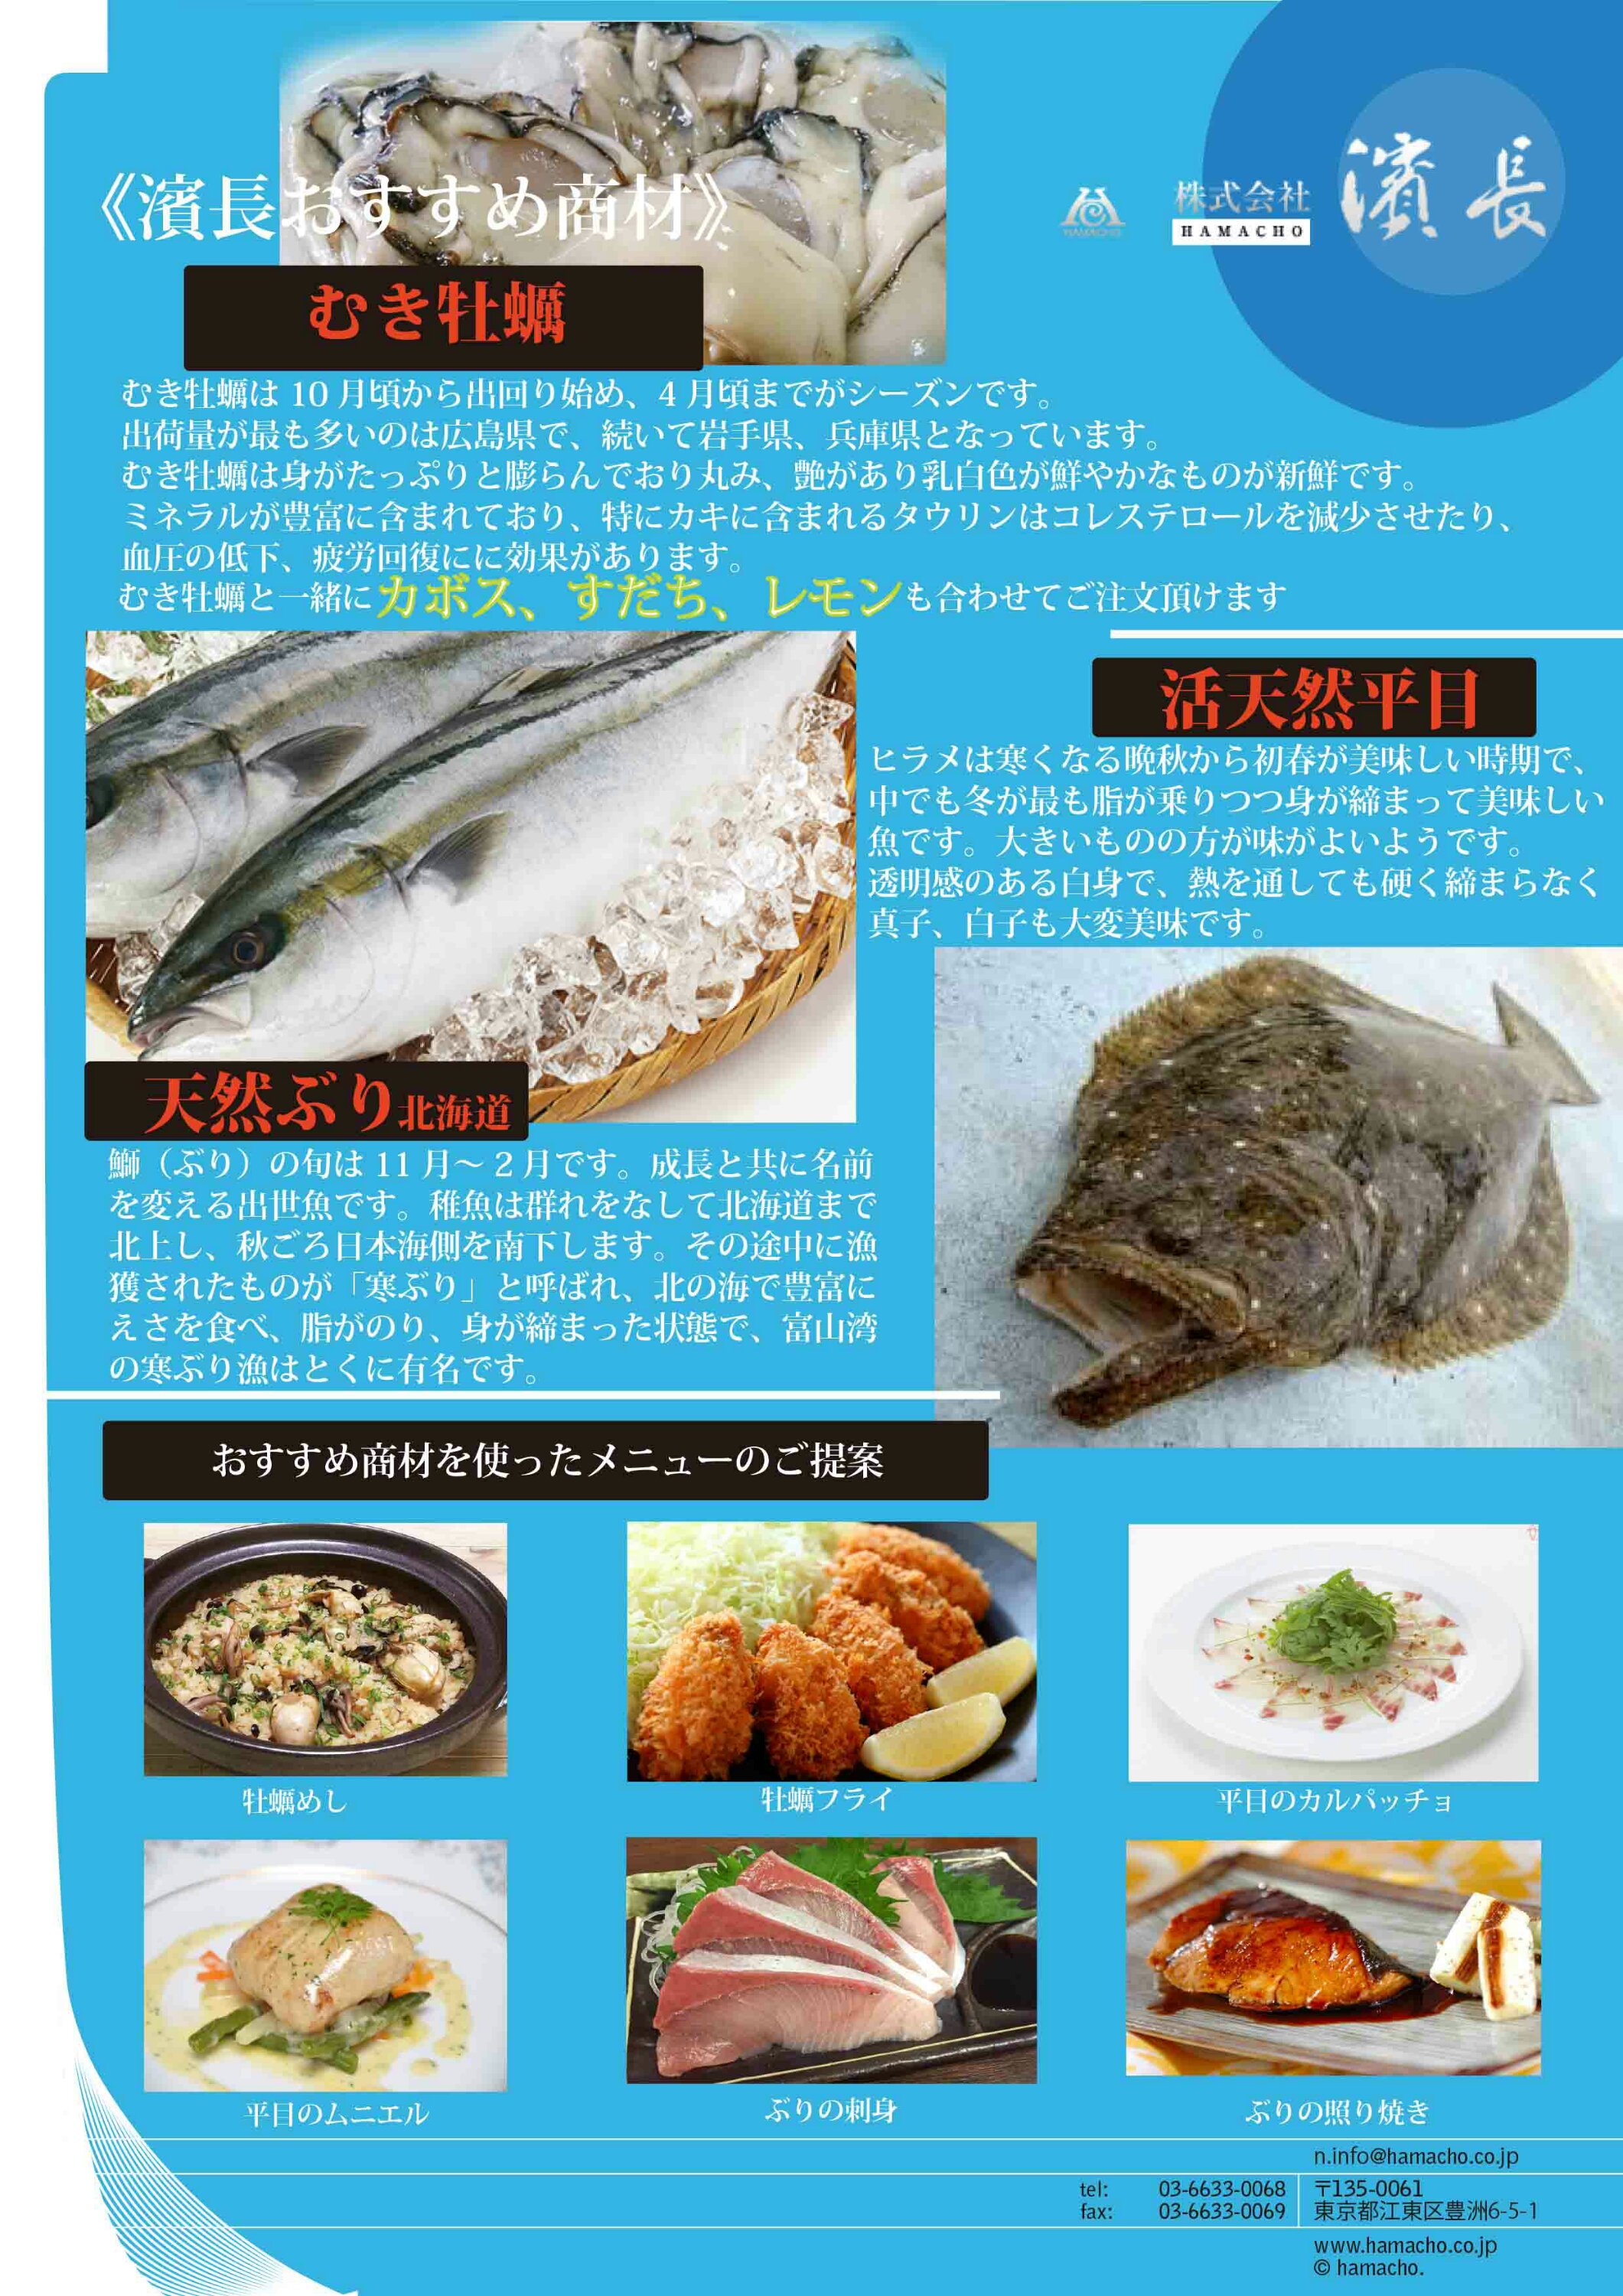 今が旬の魚 オススメ商材 築地市場水産仲卸 株式会社濱長 のブログ